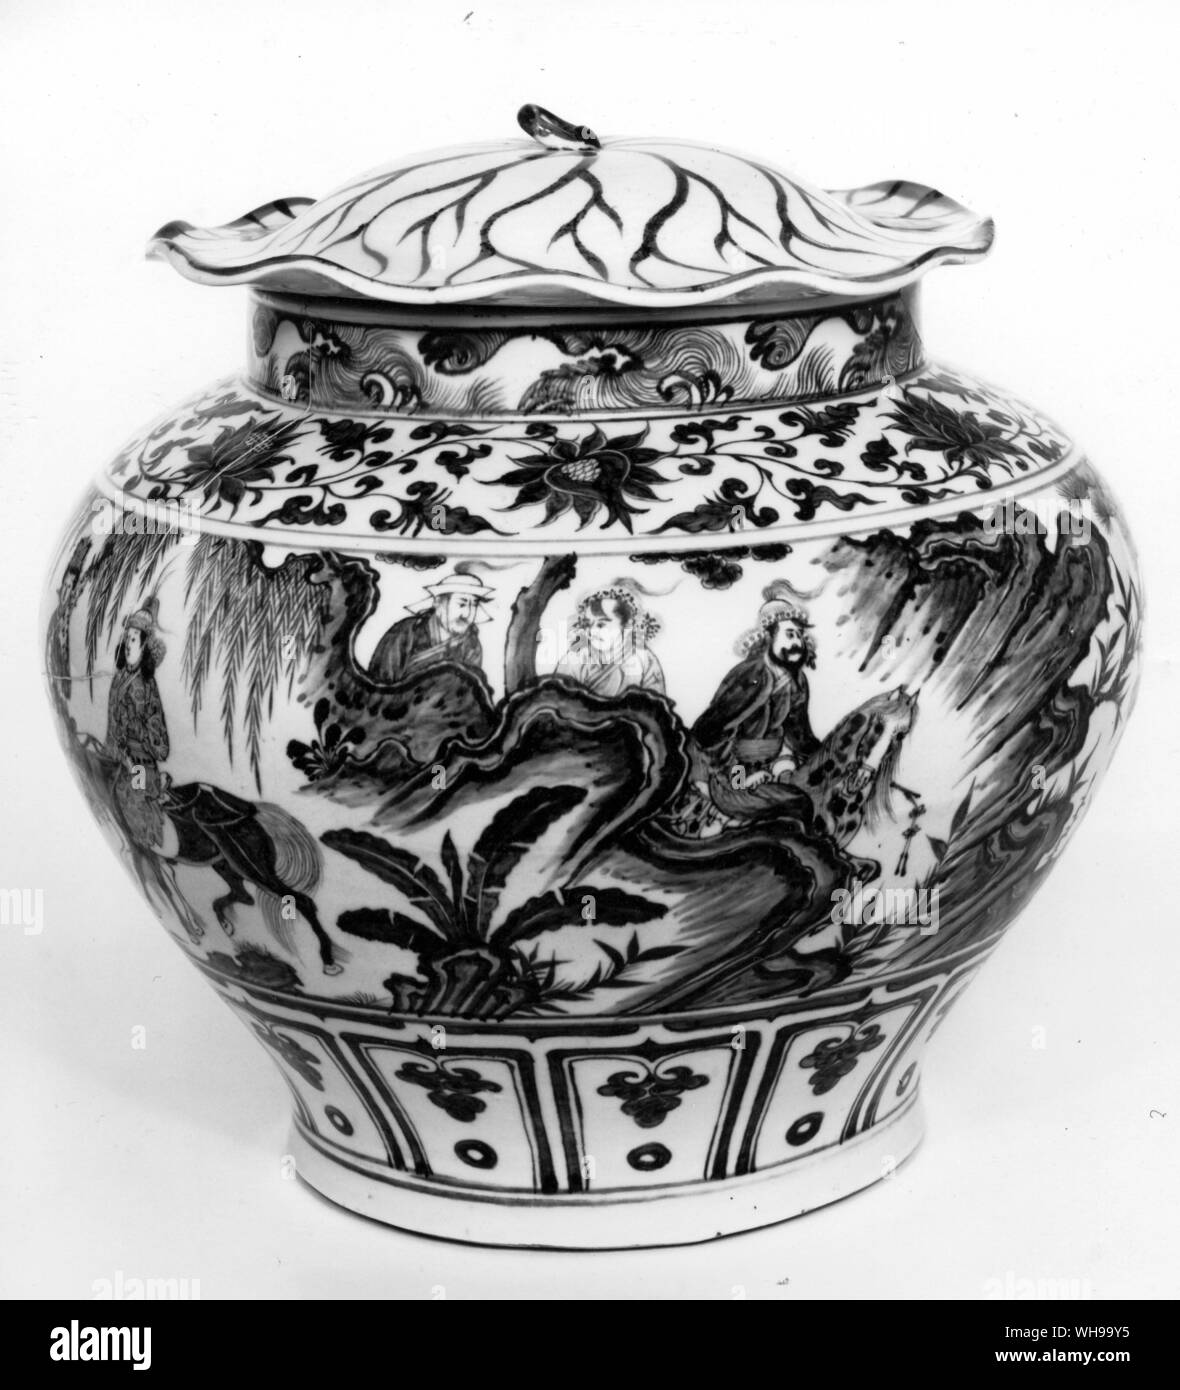 Vierzehnten Jahrhundert chinesische blaue und weiße Vase zeigt das Gerät für das Vorschlagen Abstand verwendet - von Simone Martini Stockfoto